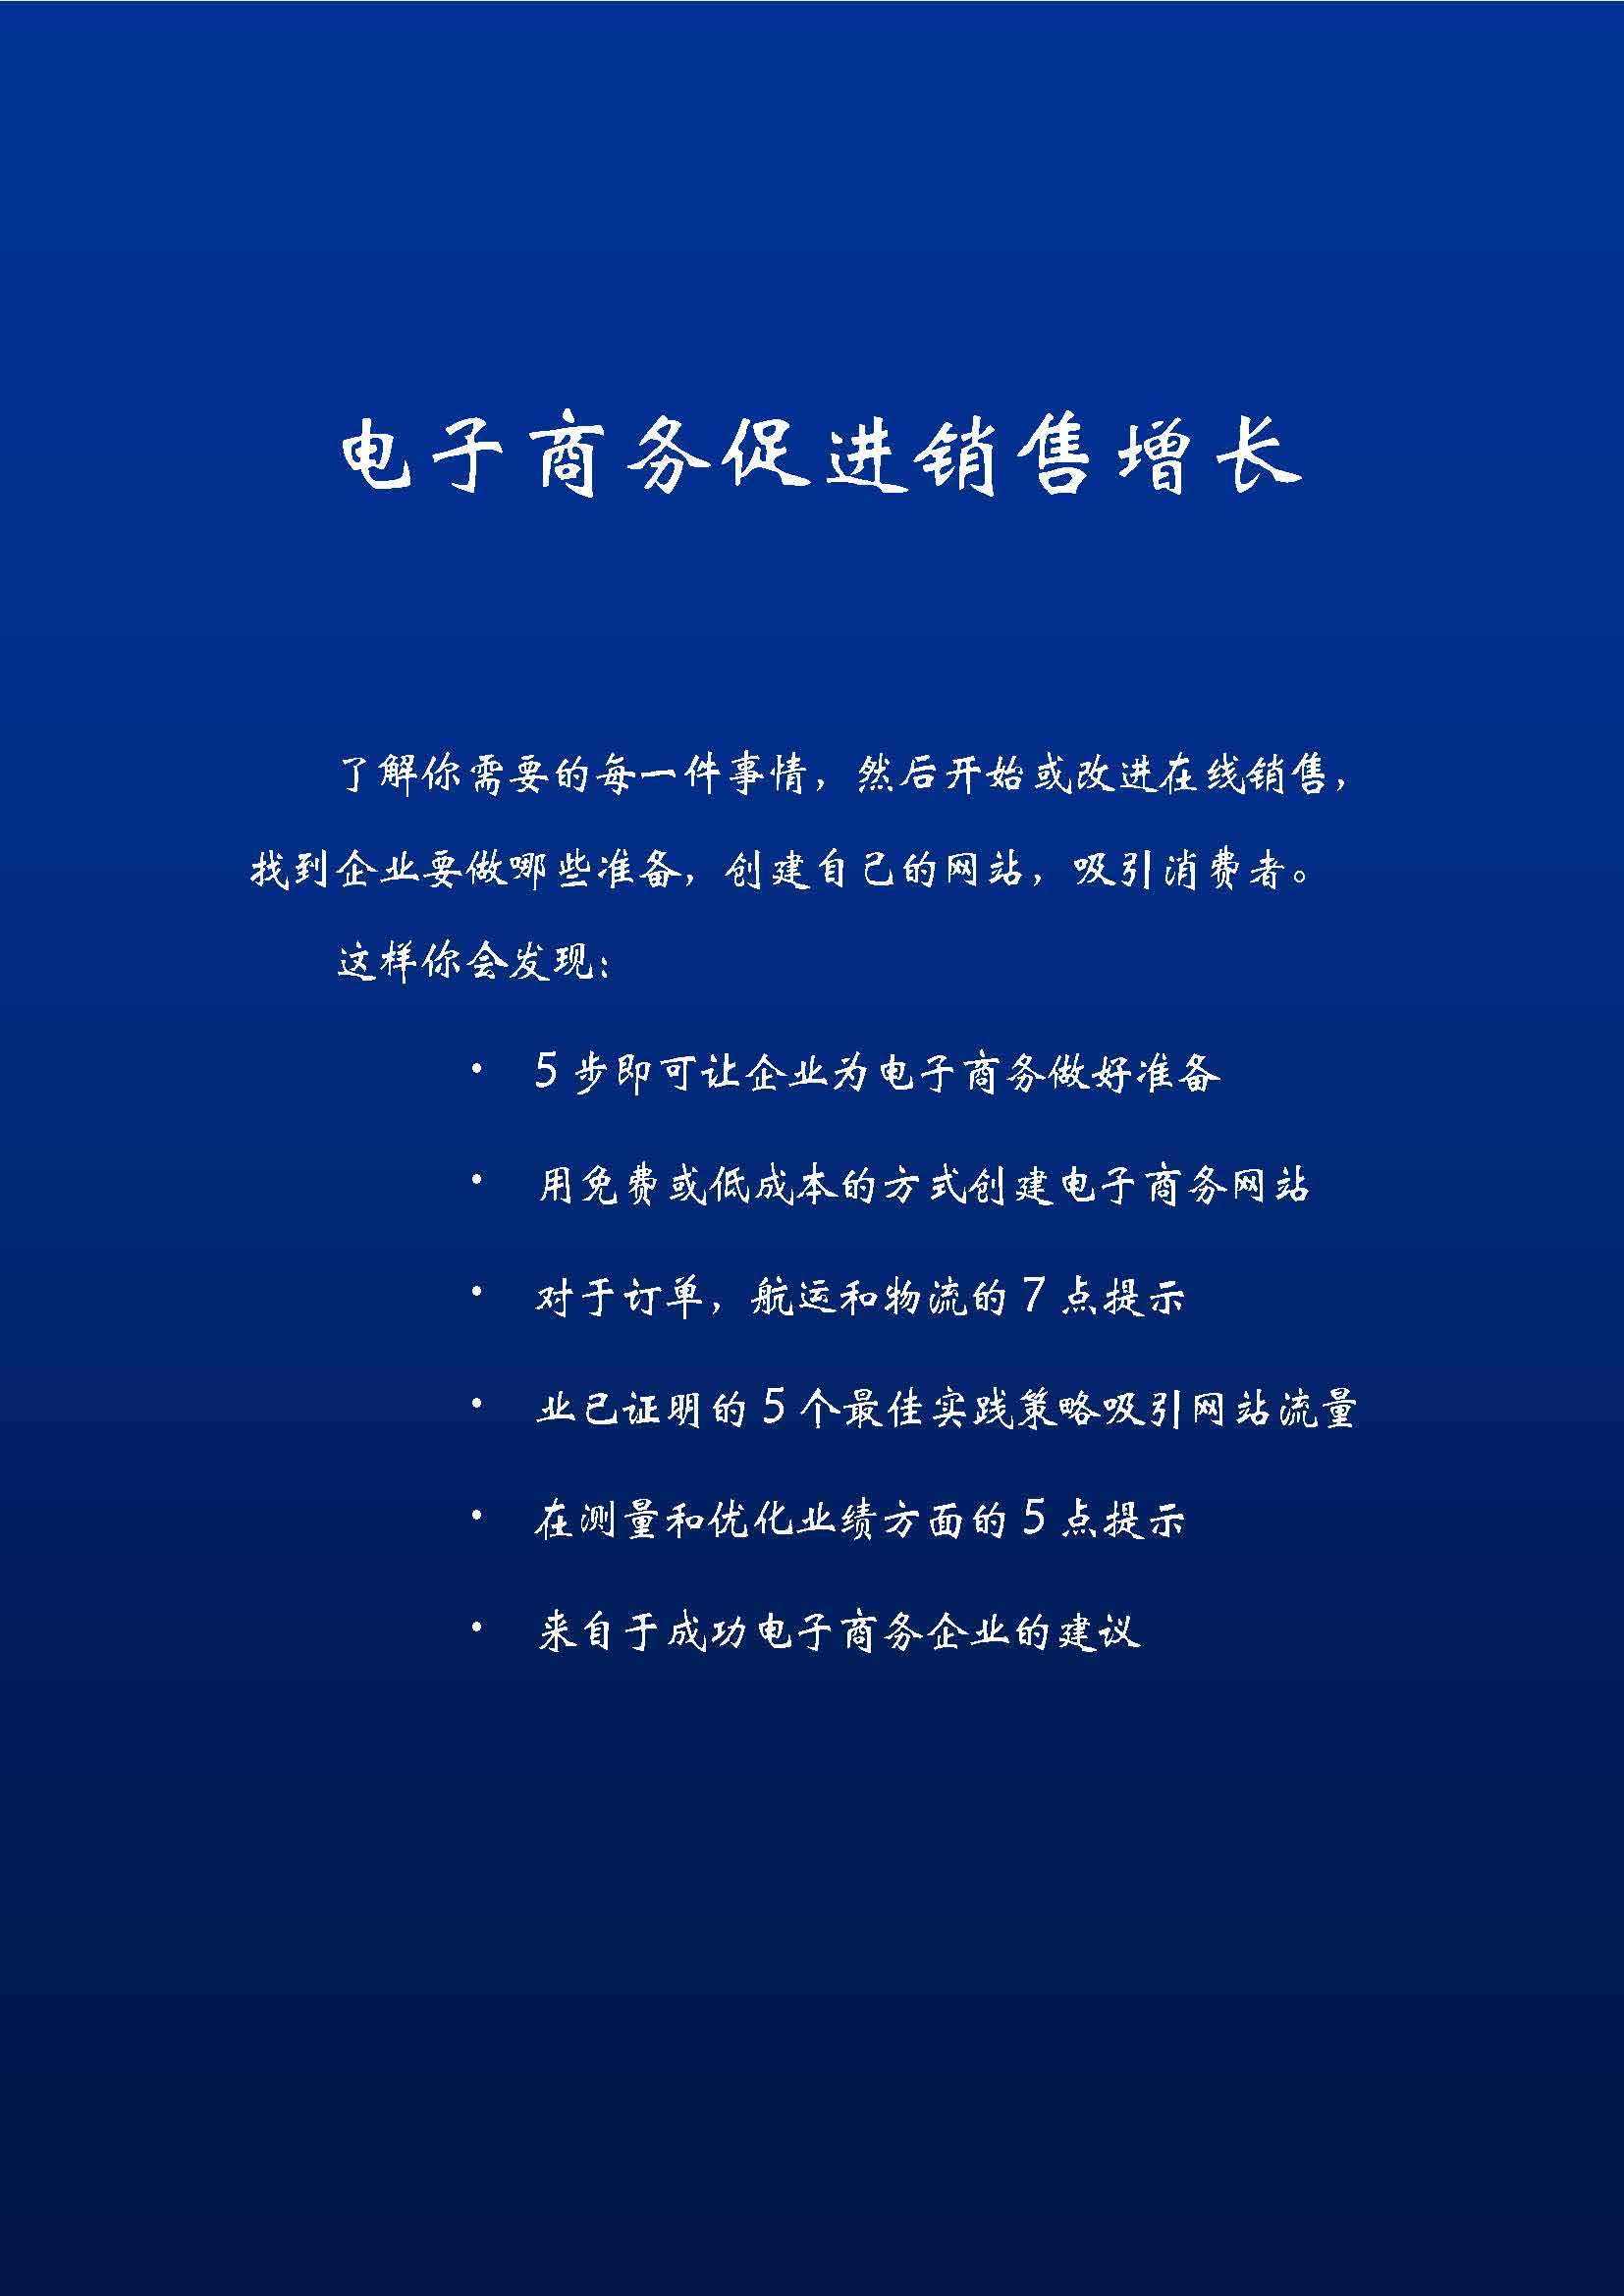 中国科技咨询协会国际快讯（第二十五期)_页面_02.jpg